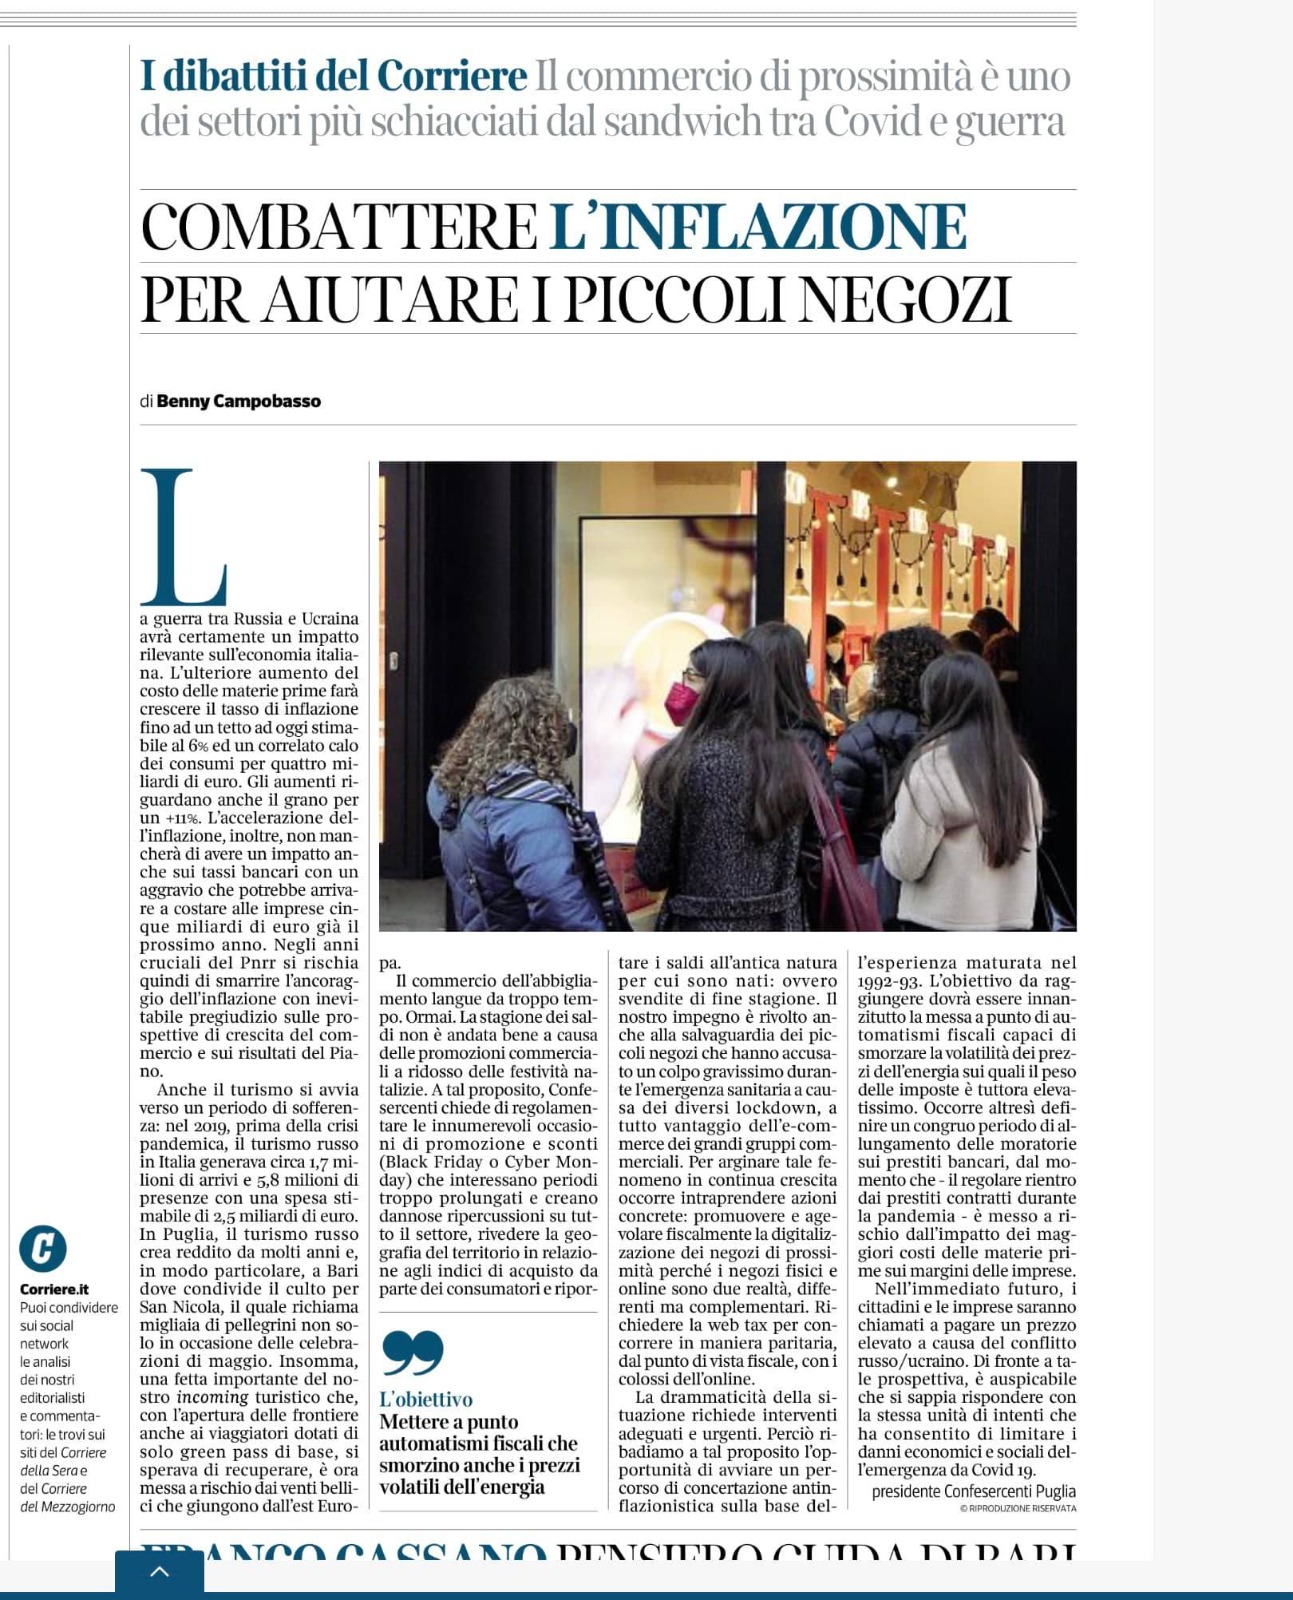 Scopri di più sull'articolo Corriere del Mezzogiorno – Combattere l’inflazione per aiutare i piccoli negozi